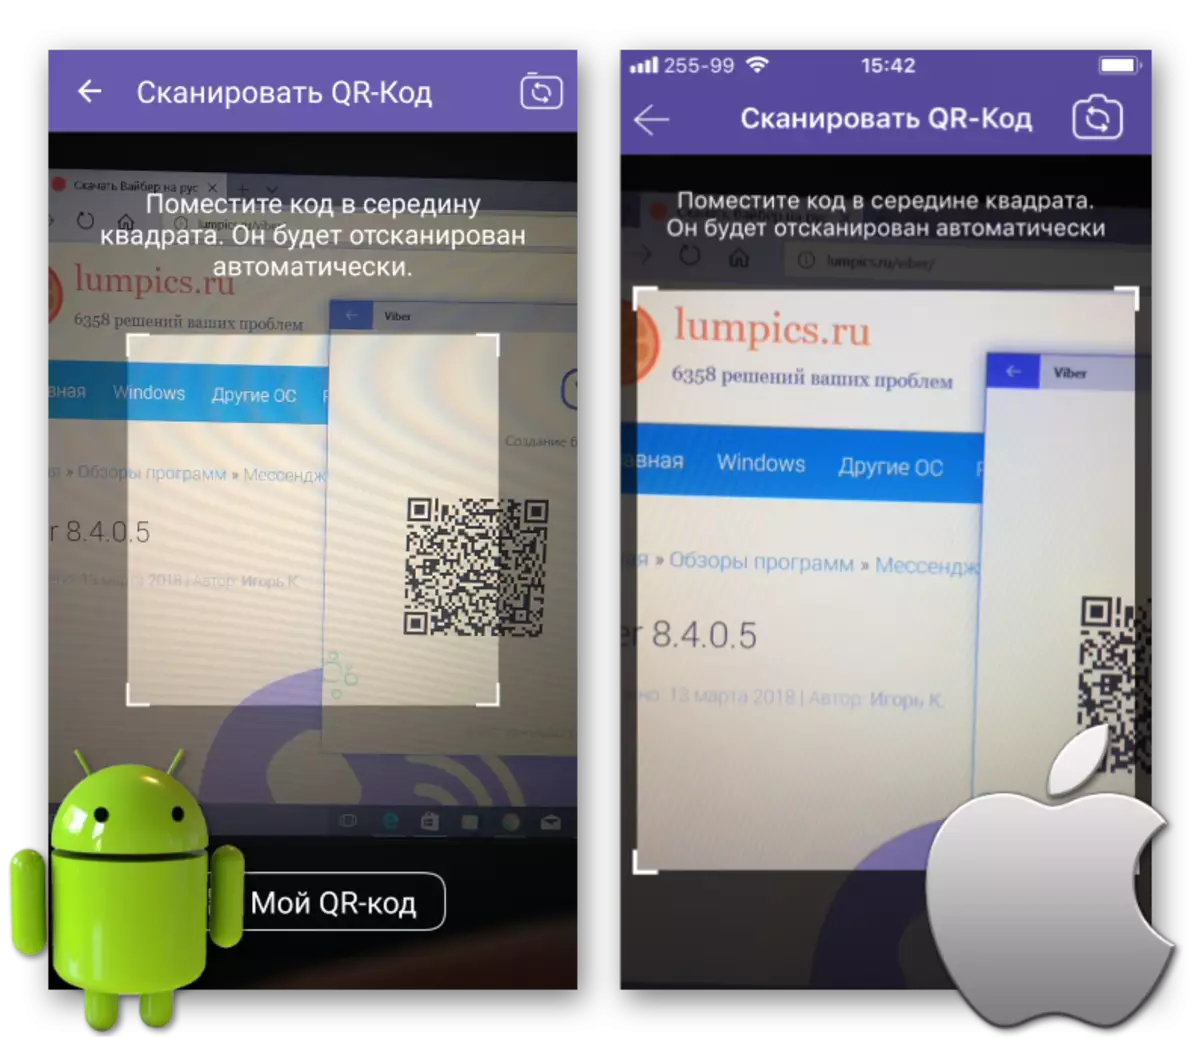 Ang Viber alang sa Sulud sa Windows QR-Code gamit ang Android Smartphone o iPhone